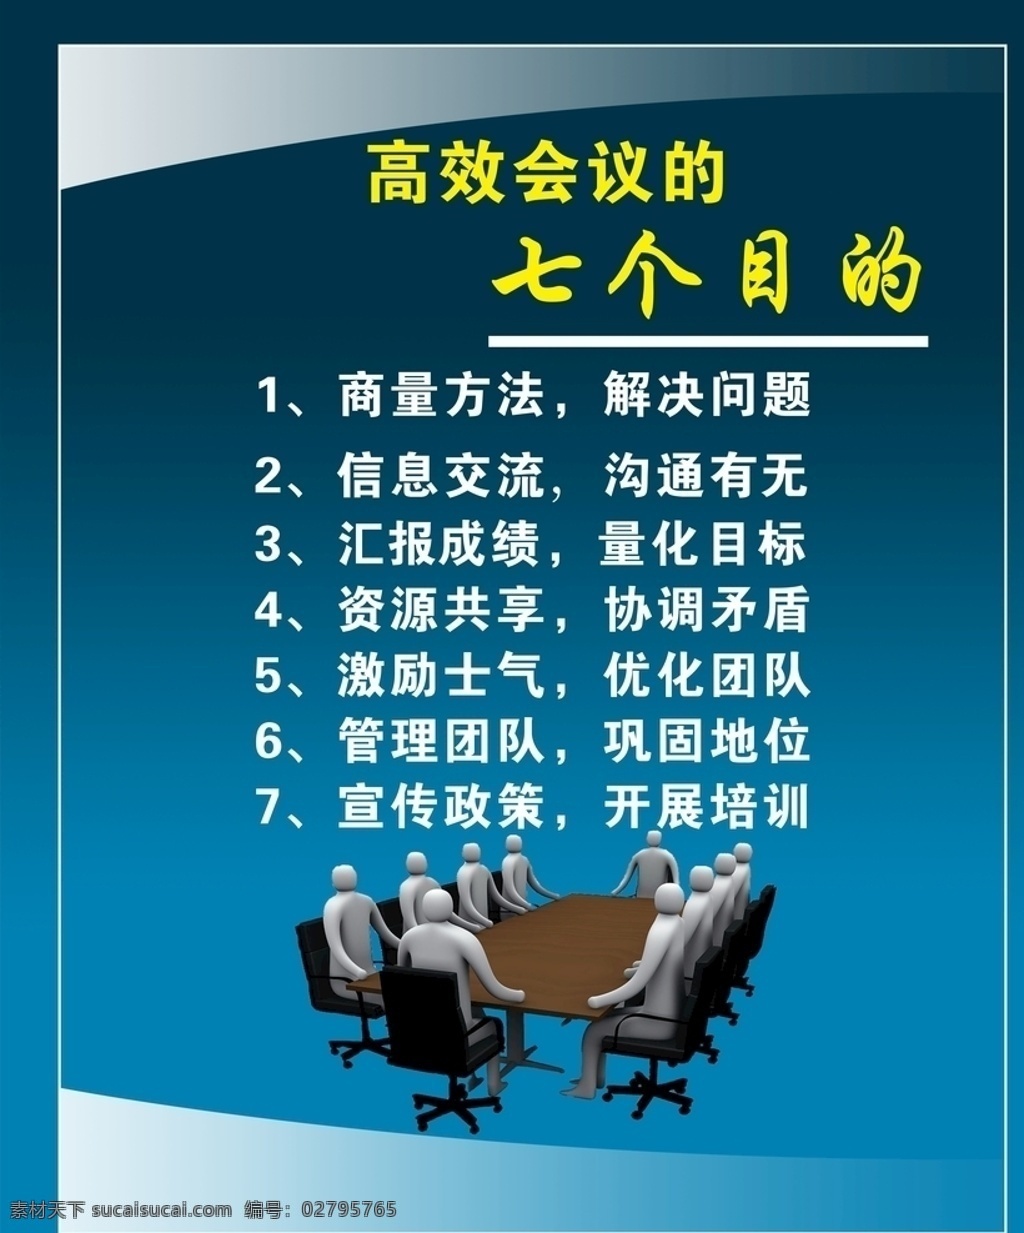 高效 会议 七 目的 高效会议 七个目的 高效率会议 会议目的 室内广告设计